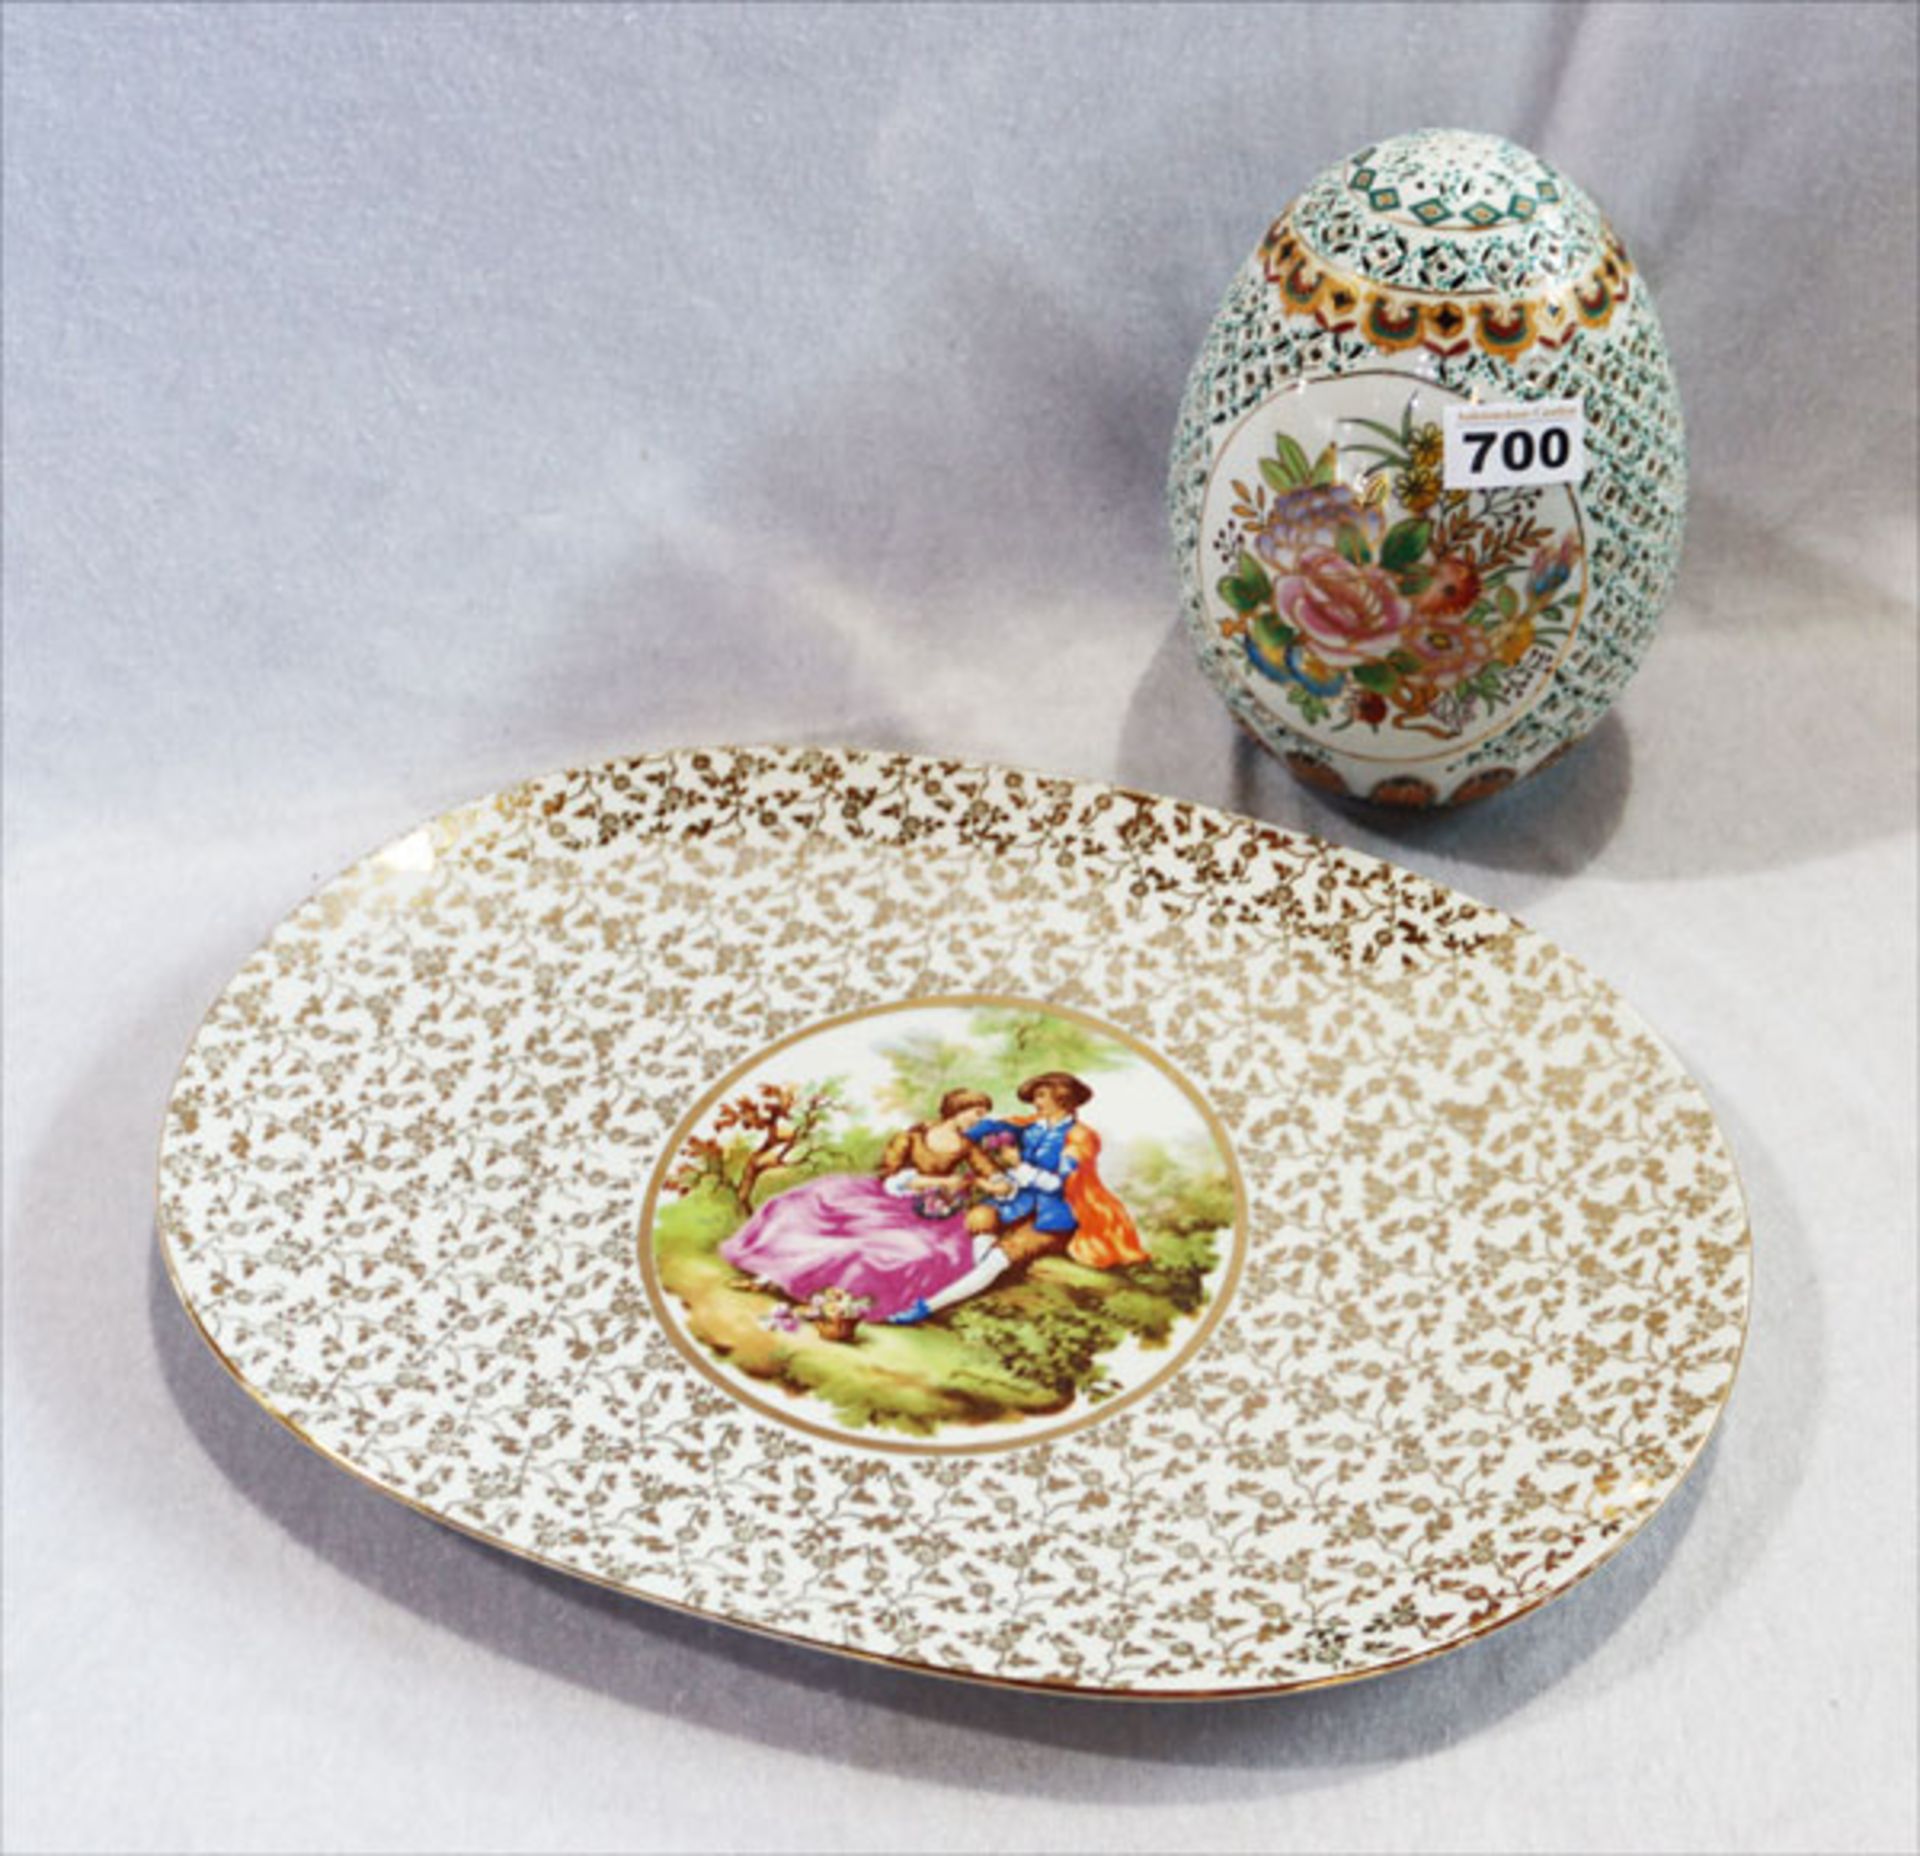 Tirschenreuth Porzellanschale mit Medaillonbildnis und Golddekor, 28 cm x 40 cm, und Keramik Deko-Ei